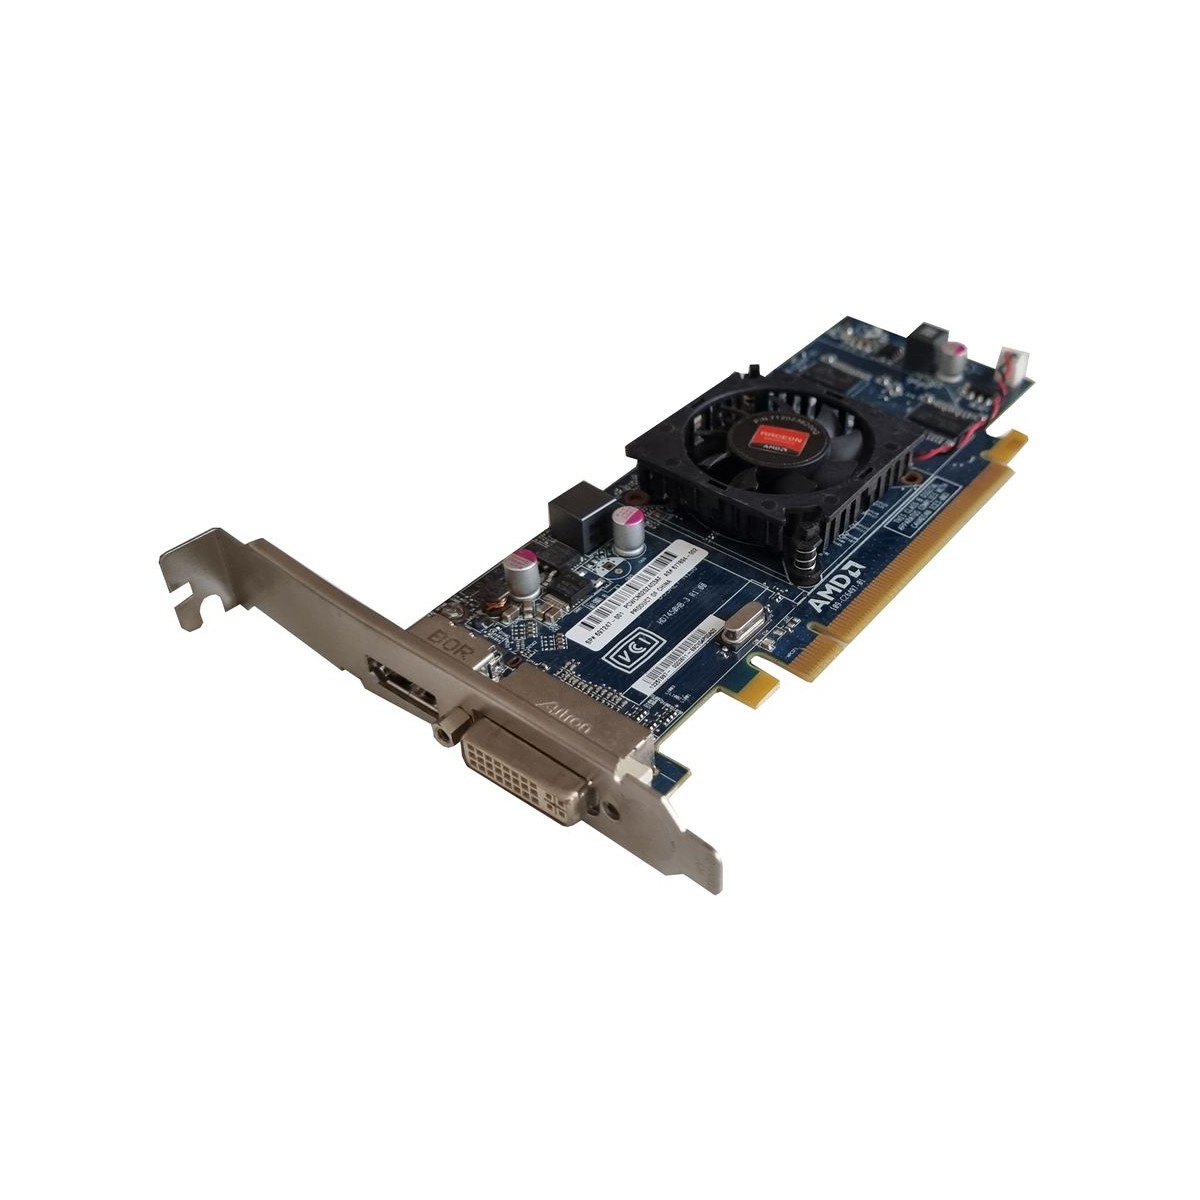 KARTA GRAFICZNA HP AMD RADEON HD7450 1GB DDR3 PCIE FULL PROFILE 677894-002